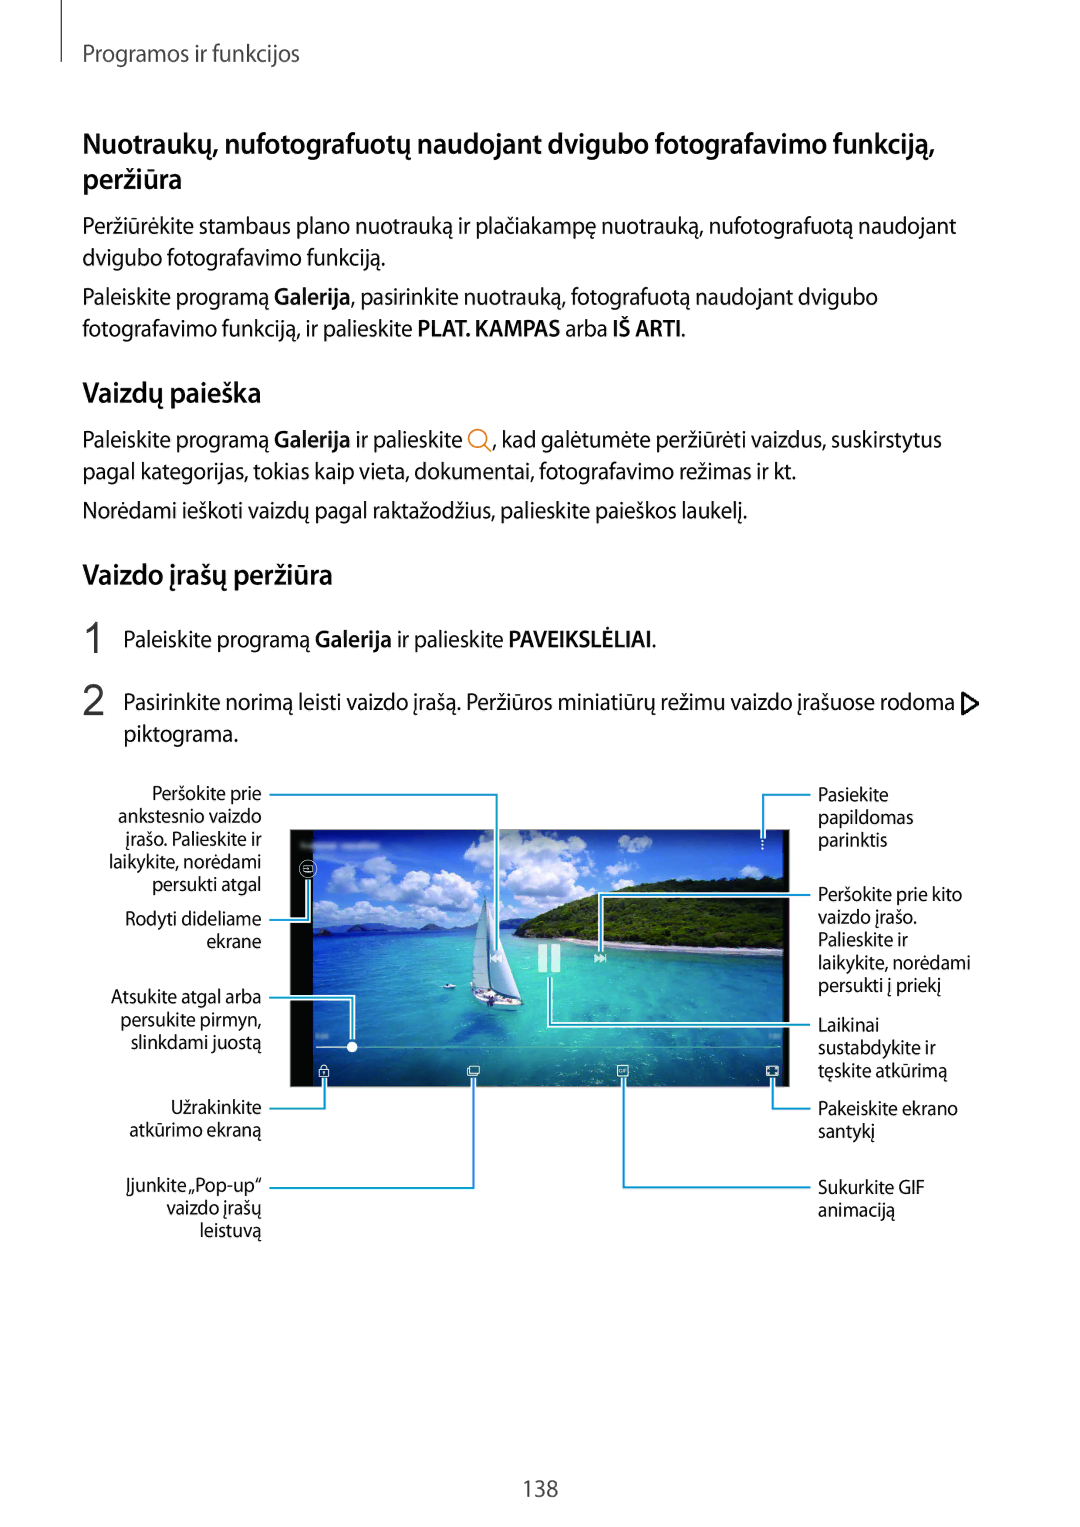 Samsung SM-N950FZKDSEB, SM-N950FZDDSEB manual Vaizdų paieška, Vaizdo įrašų peržiūra 